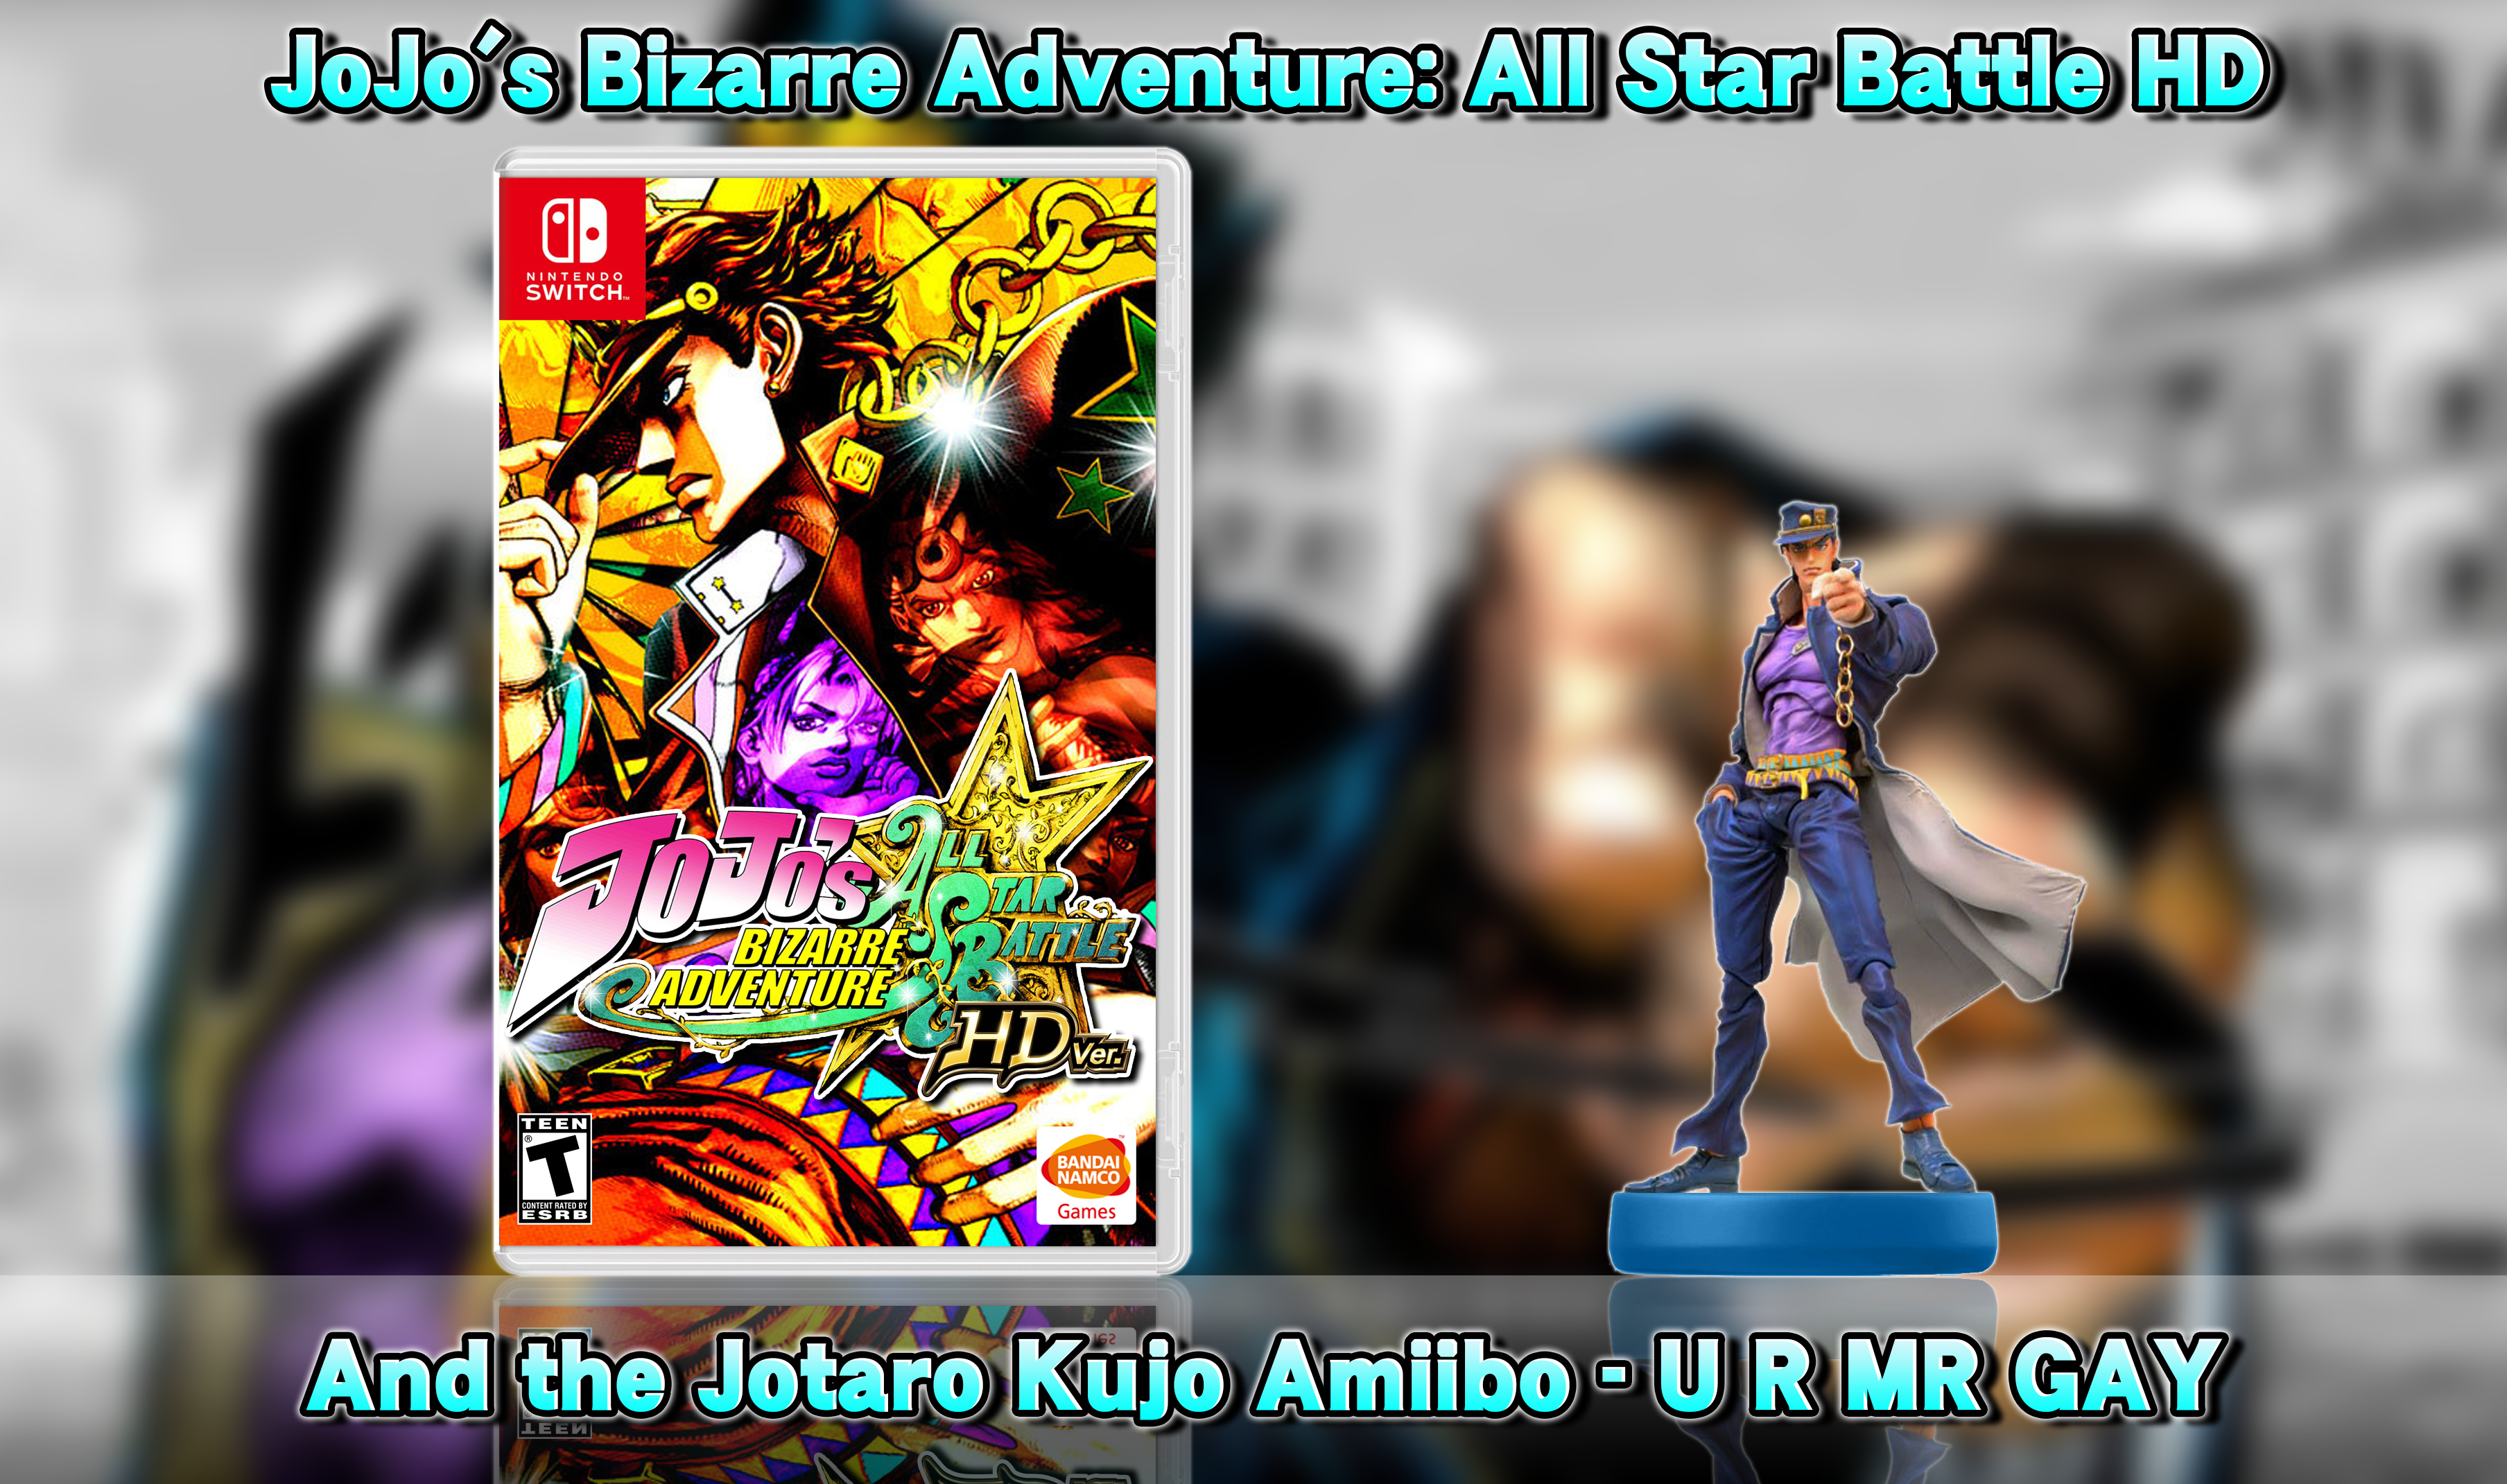 jojo all star battle r release date download free